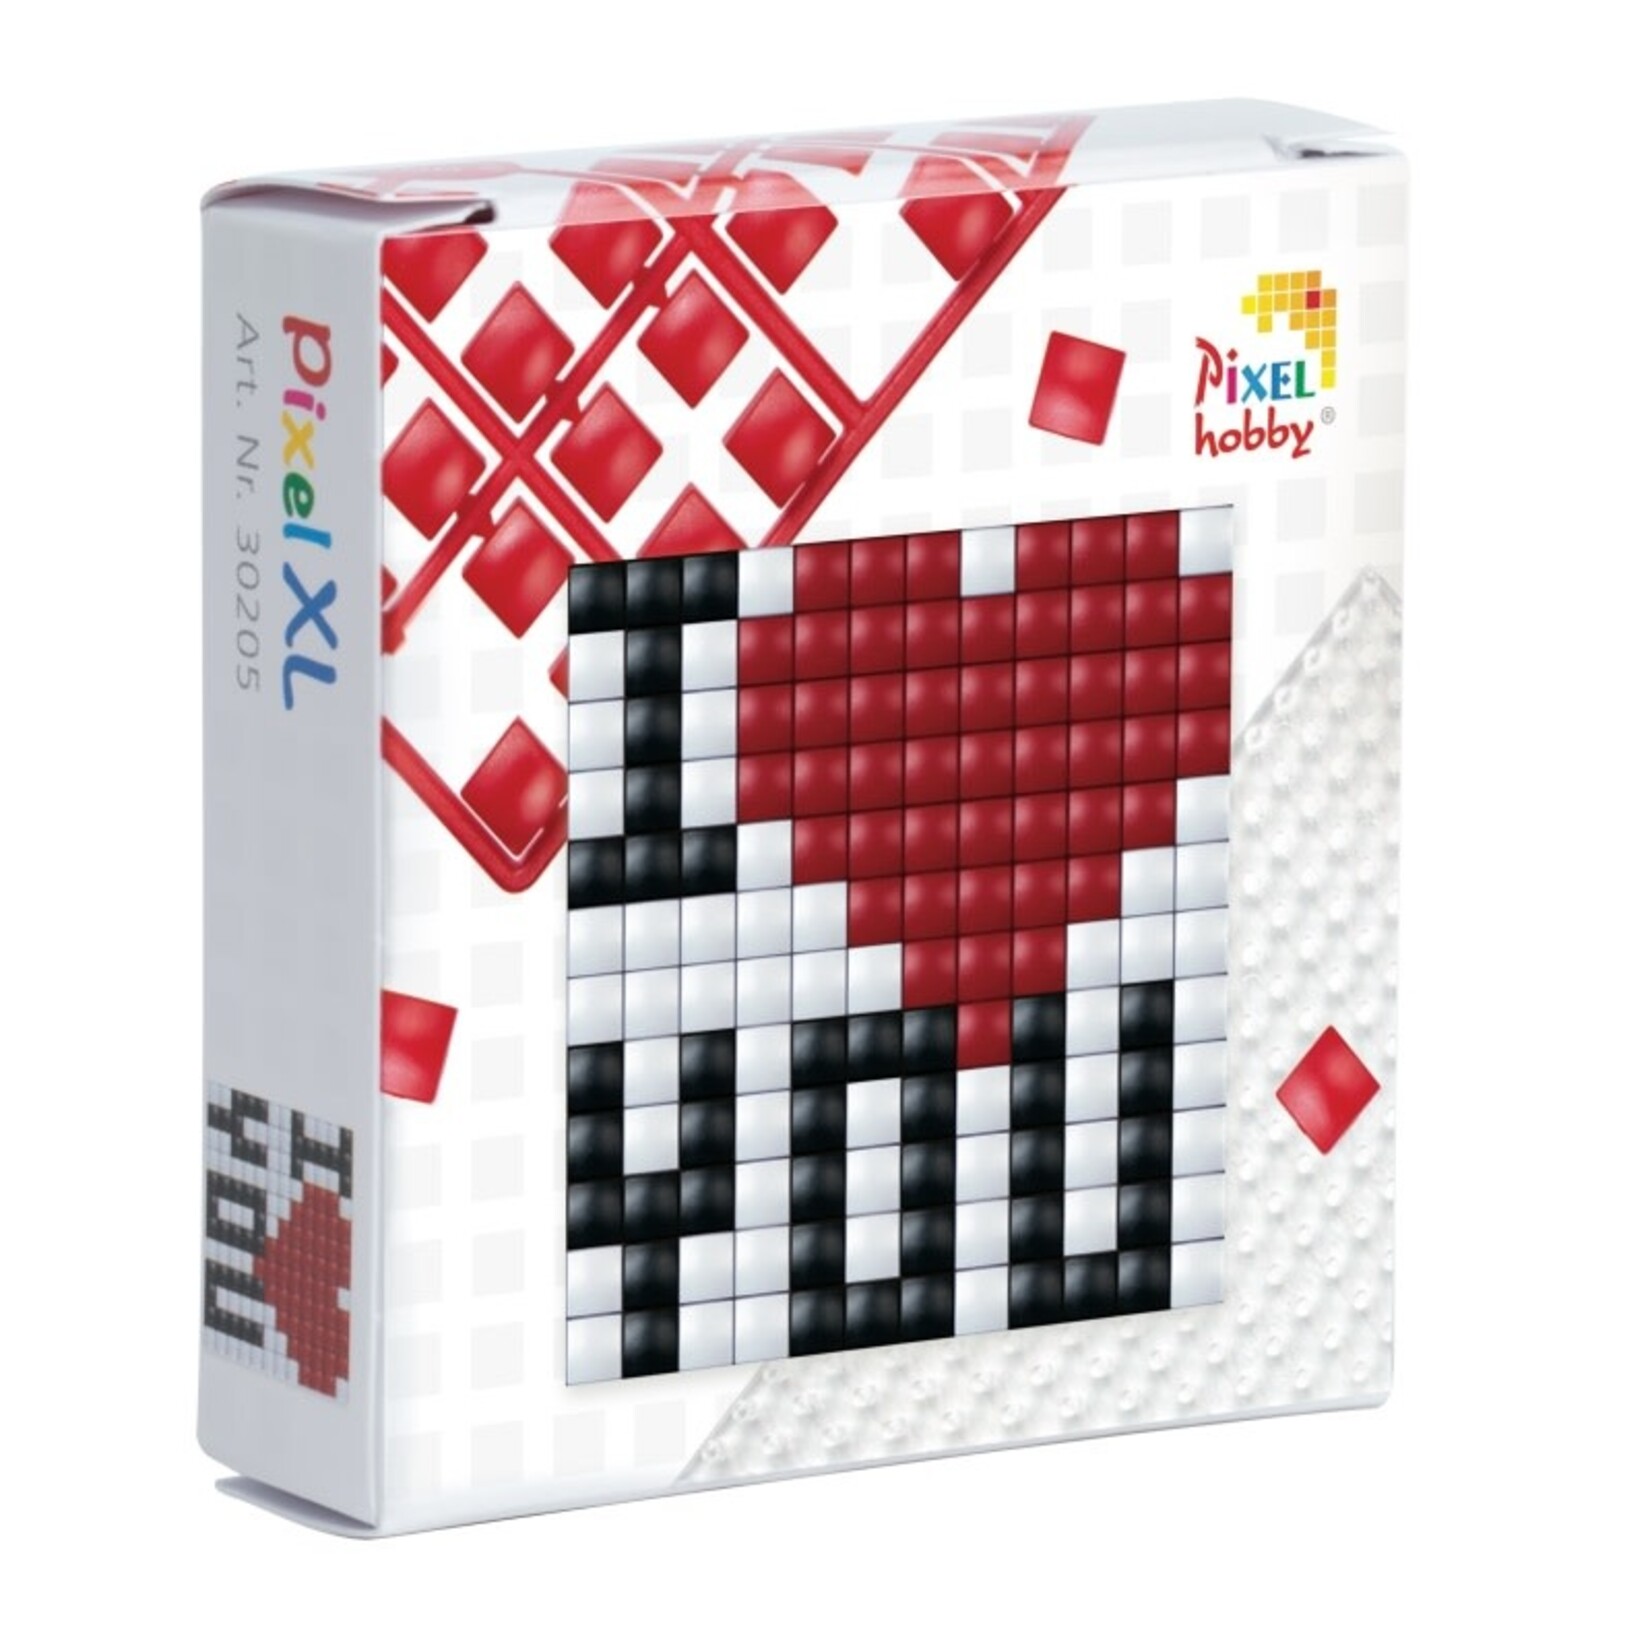 Pixel Pixelhobby XL - startset - I love you